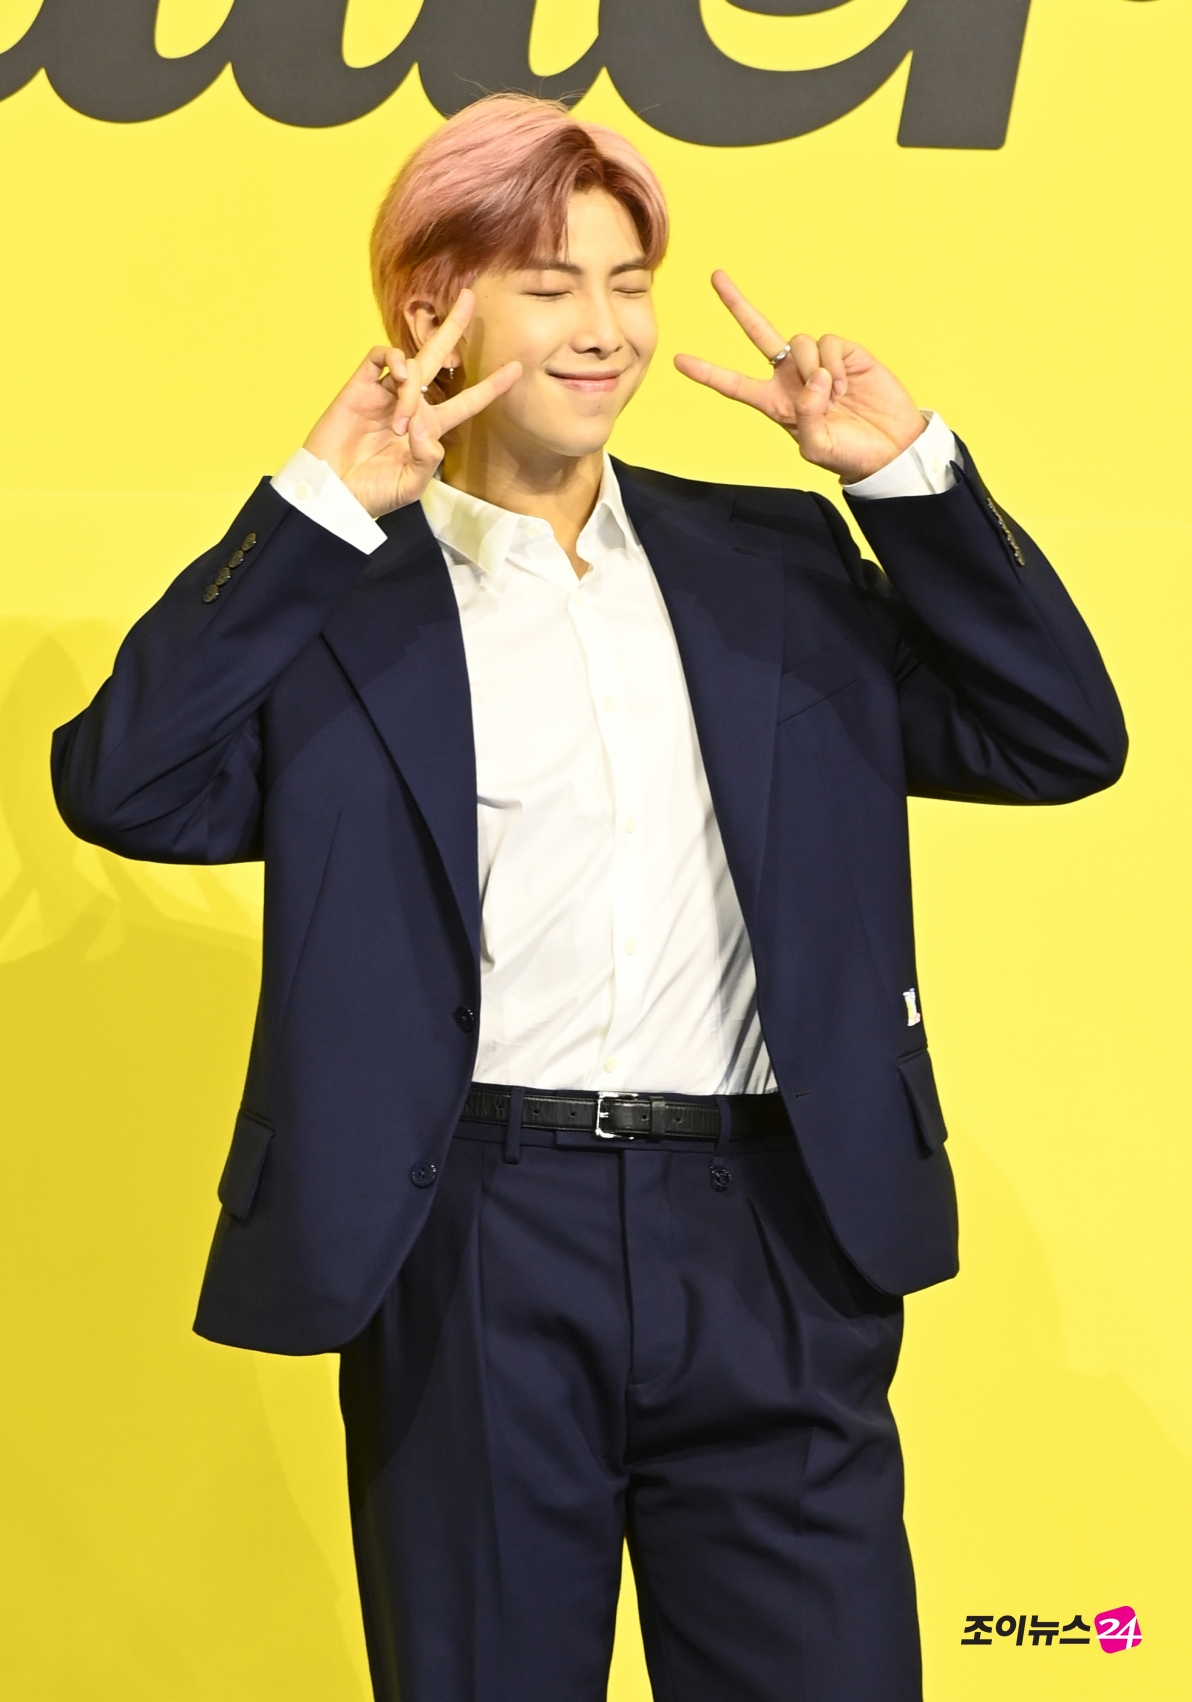 방탄소년단(BTS) 새 디지털 싱글 'Butter' 발매 기념 글로벌 기자간담회가 21일 오후 서울 송파구 방이동 올림픽공원 올림픽홀에서 열렸다. 방탄소년단 RM이 포토타임을 갖고 있다. 